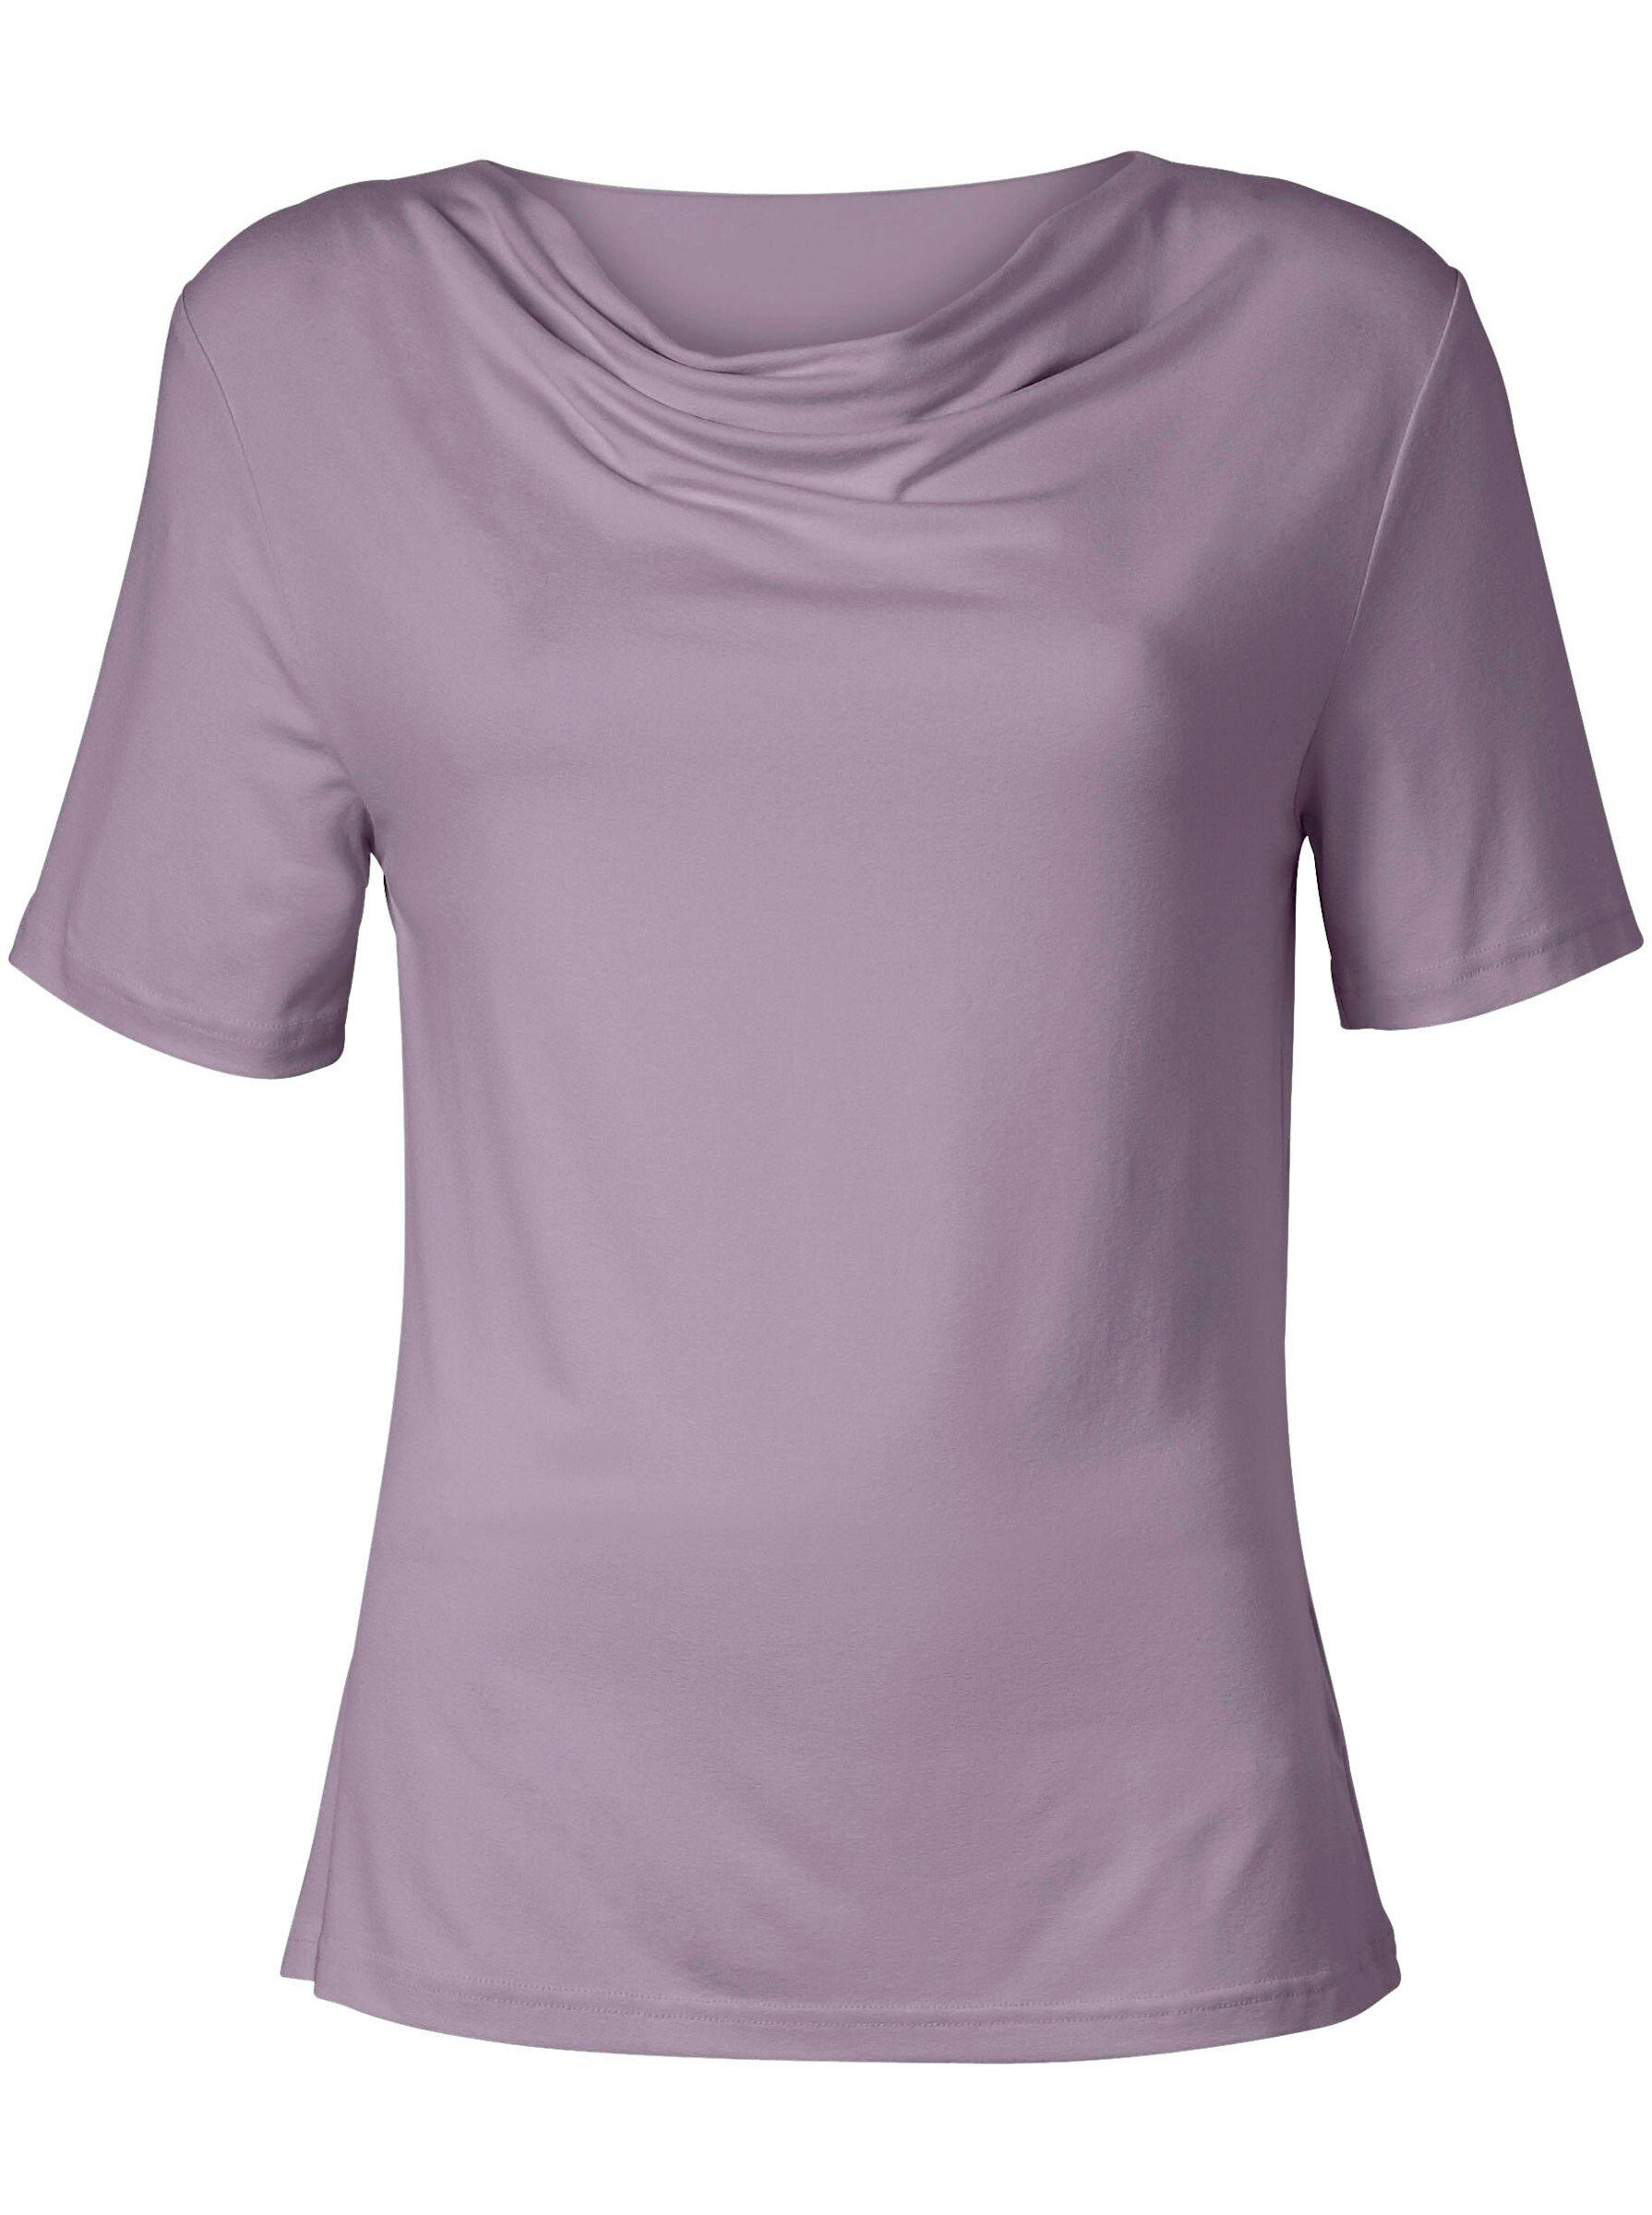 WEIDEN lavendel T-Shirt WITT